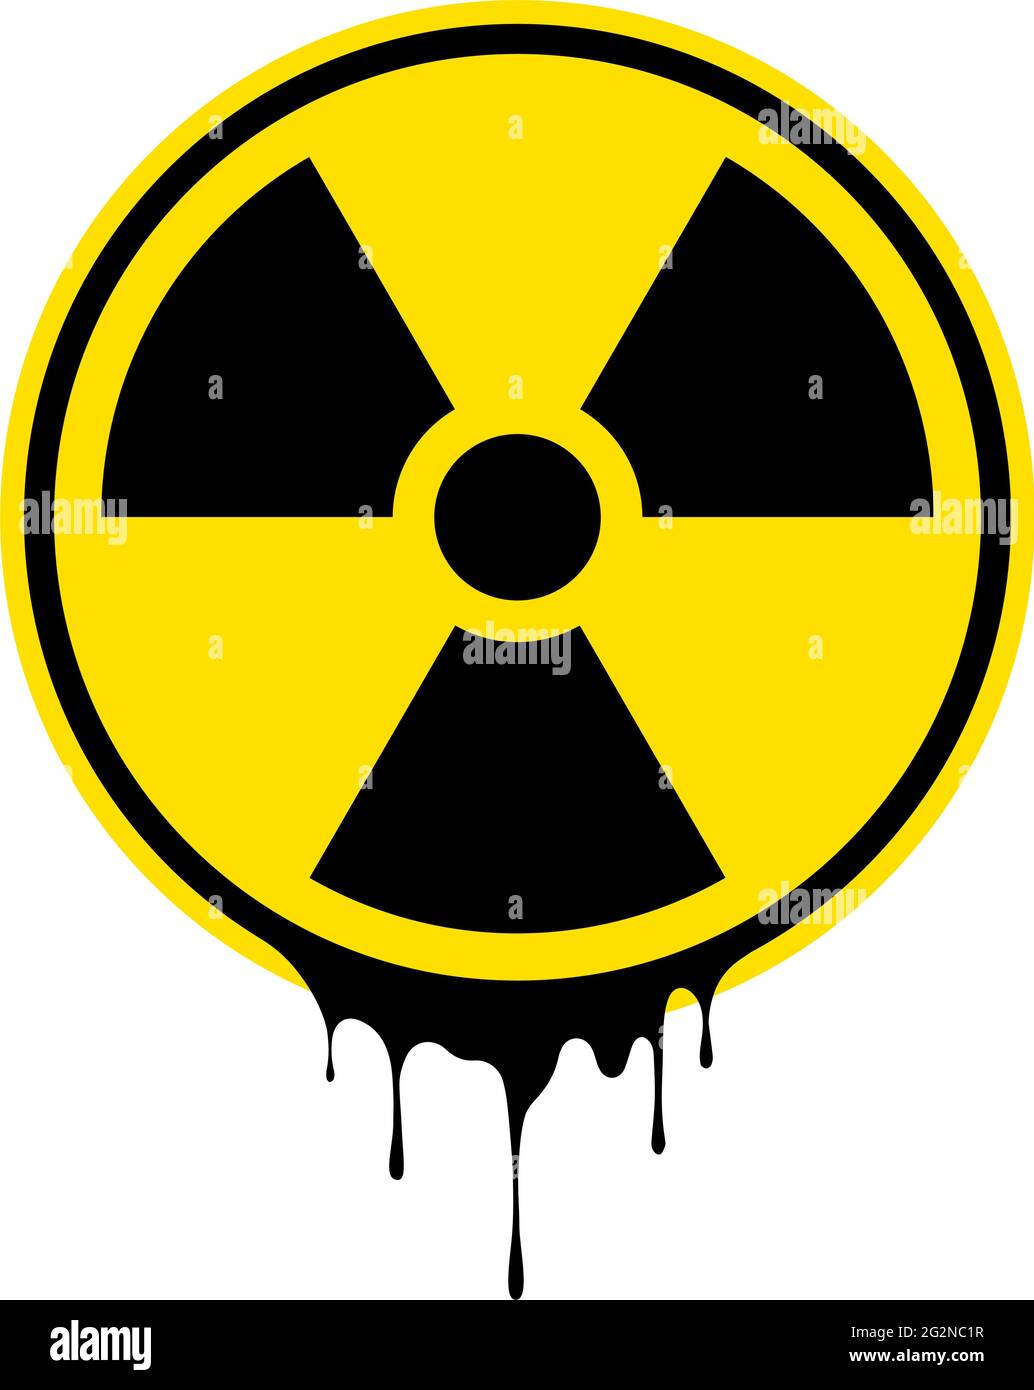 Strahlungszeichen. Warnsymbol. Grunge-Effekt. Flaches Symbol für radioaktive Vektoren Stock Vektor